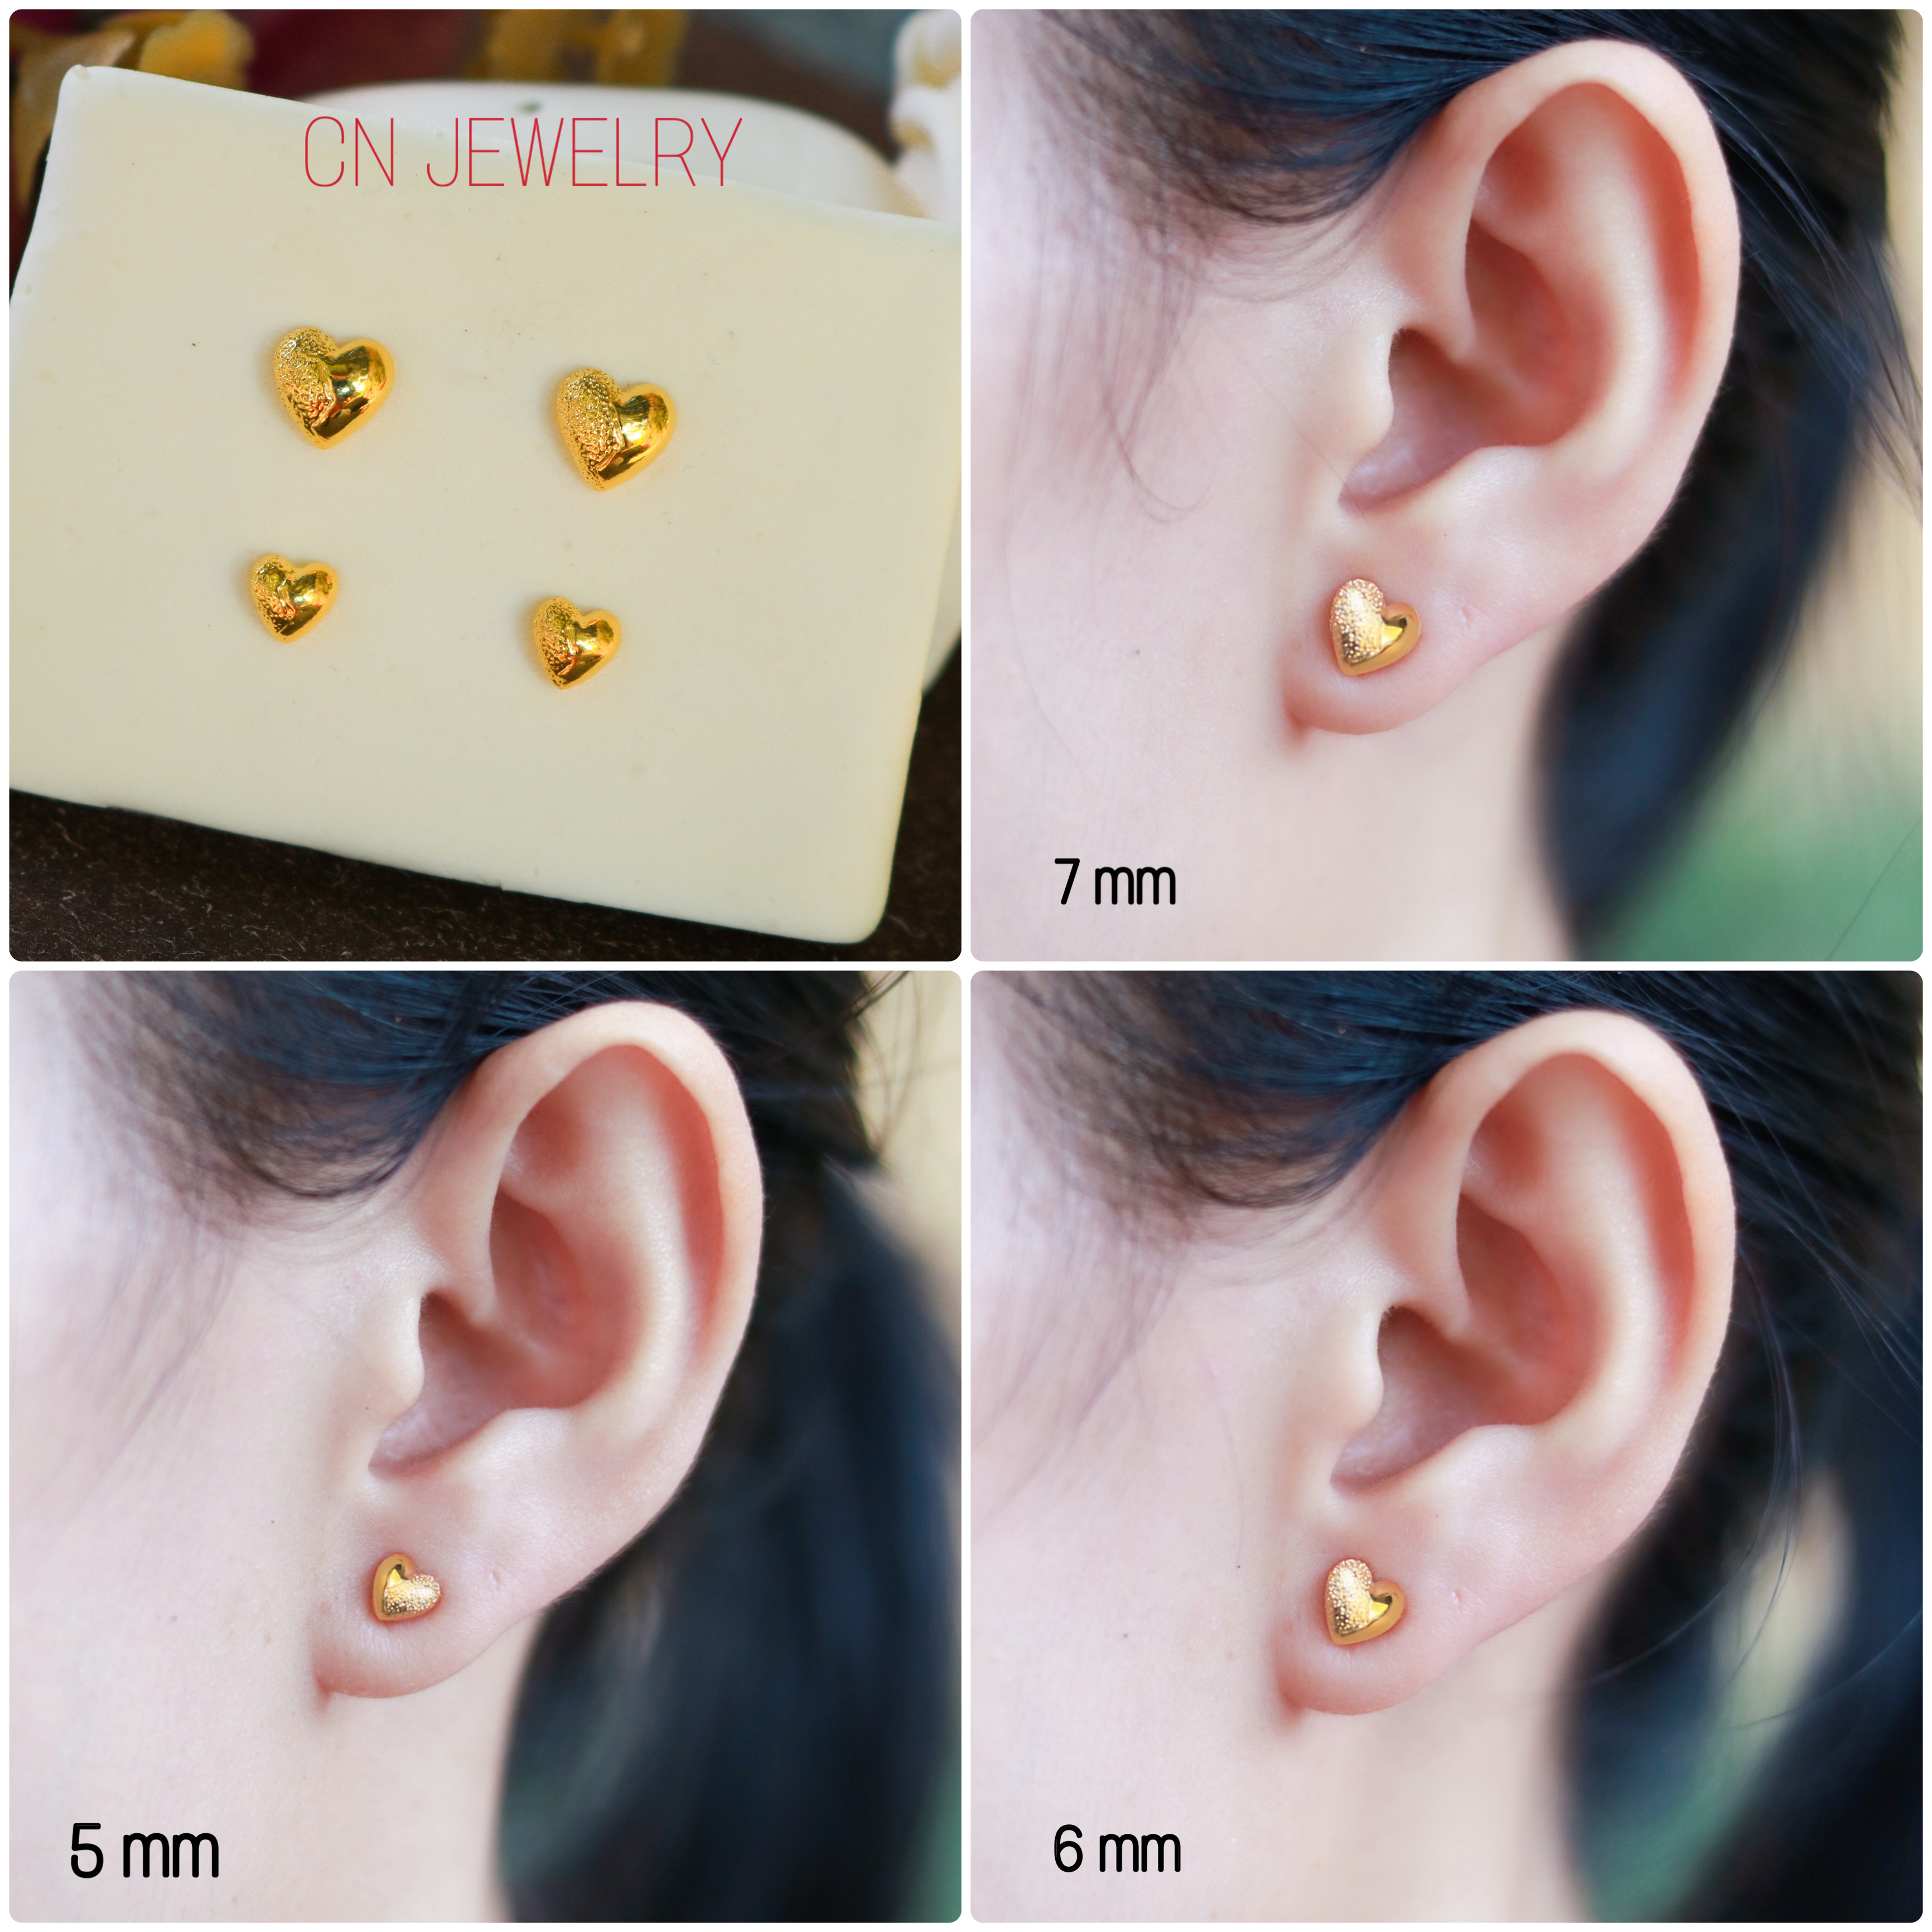 CN JEWELRY ต่างหู หัวใจซีก ต่างหู ตุ้มหู ต่างหูหุ้มทอง ต่างหูทอง ฟรีตลับทองทุกคู่